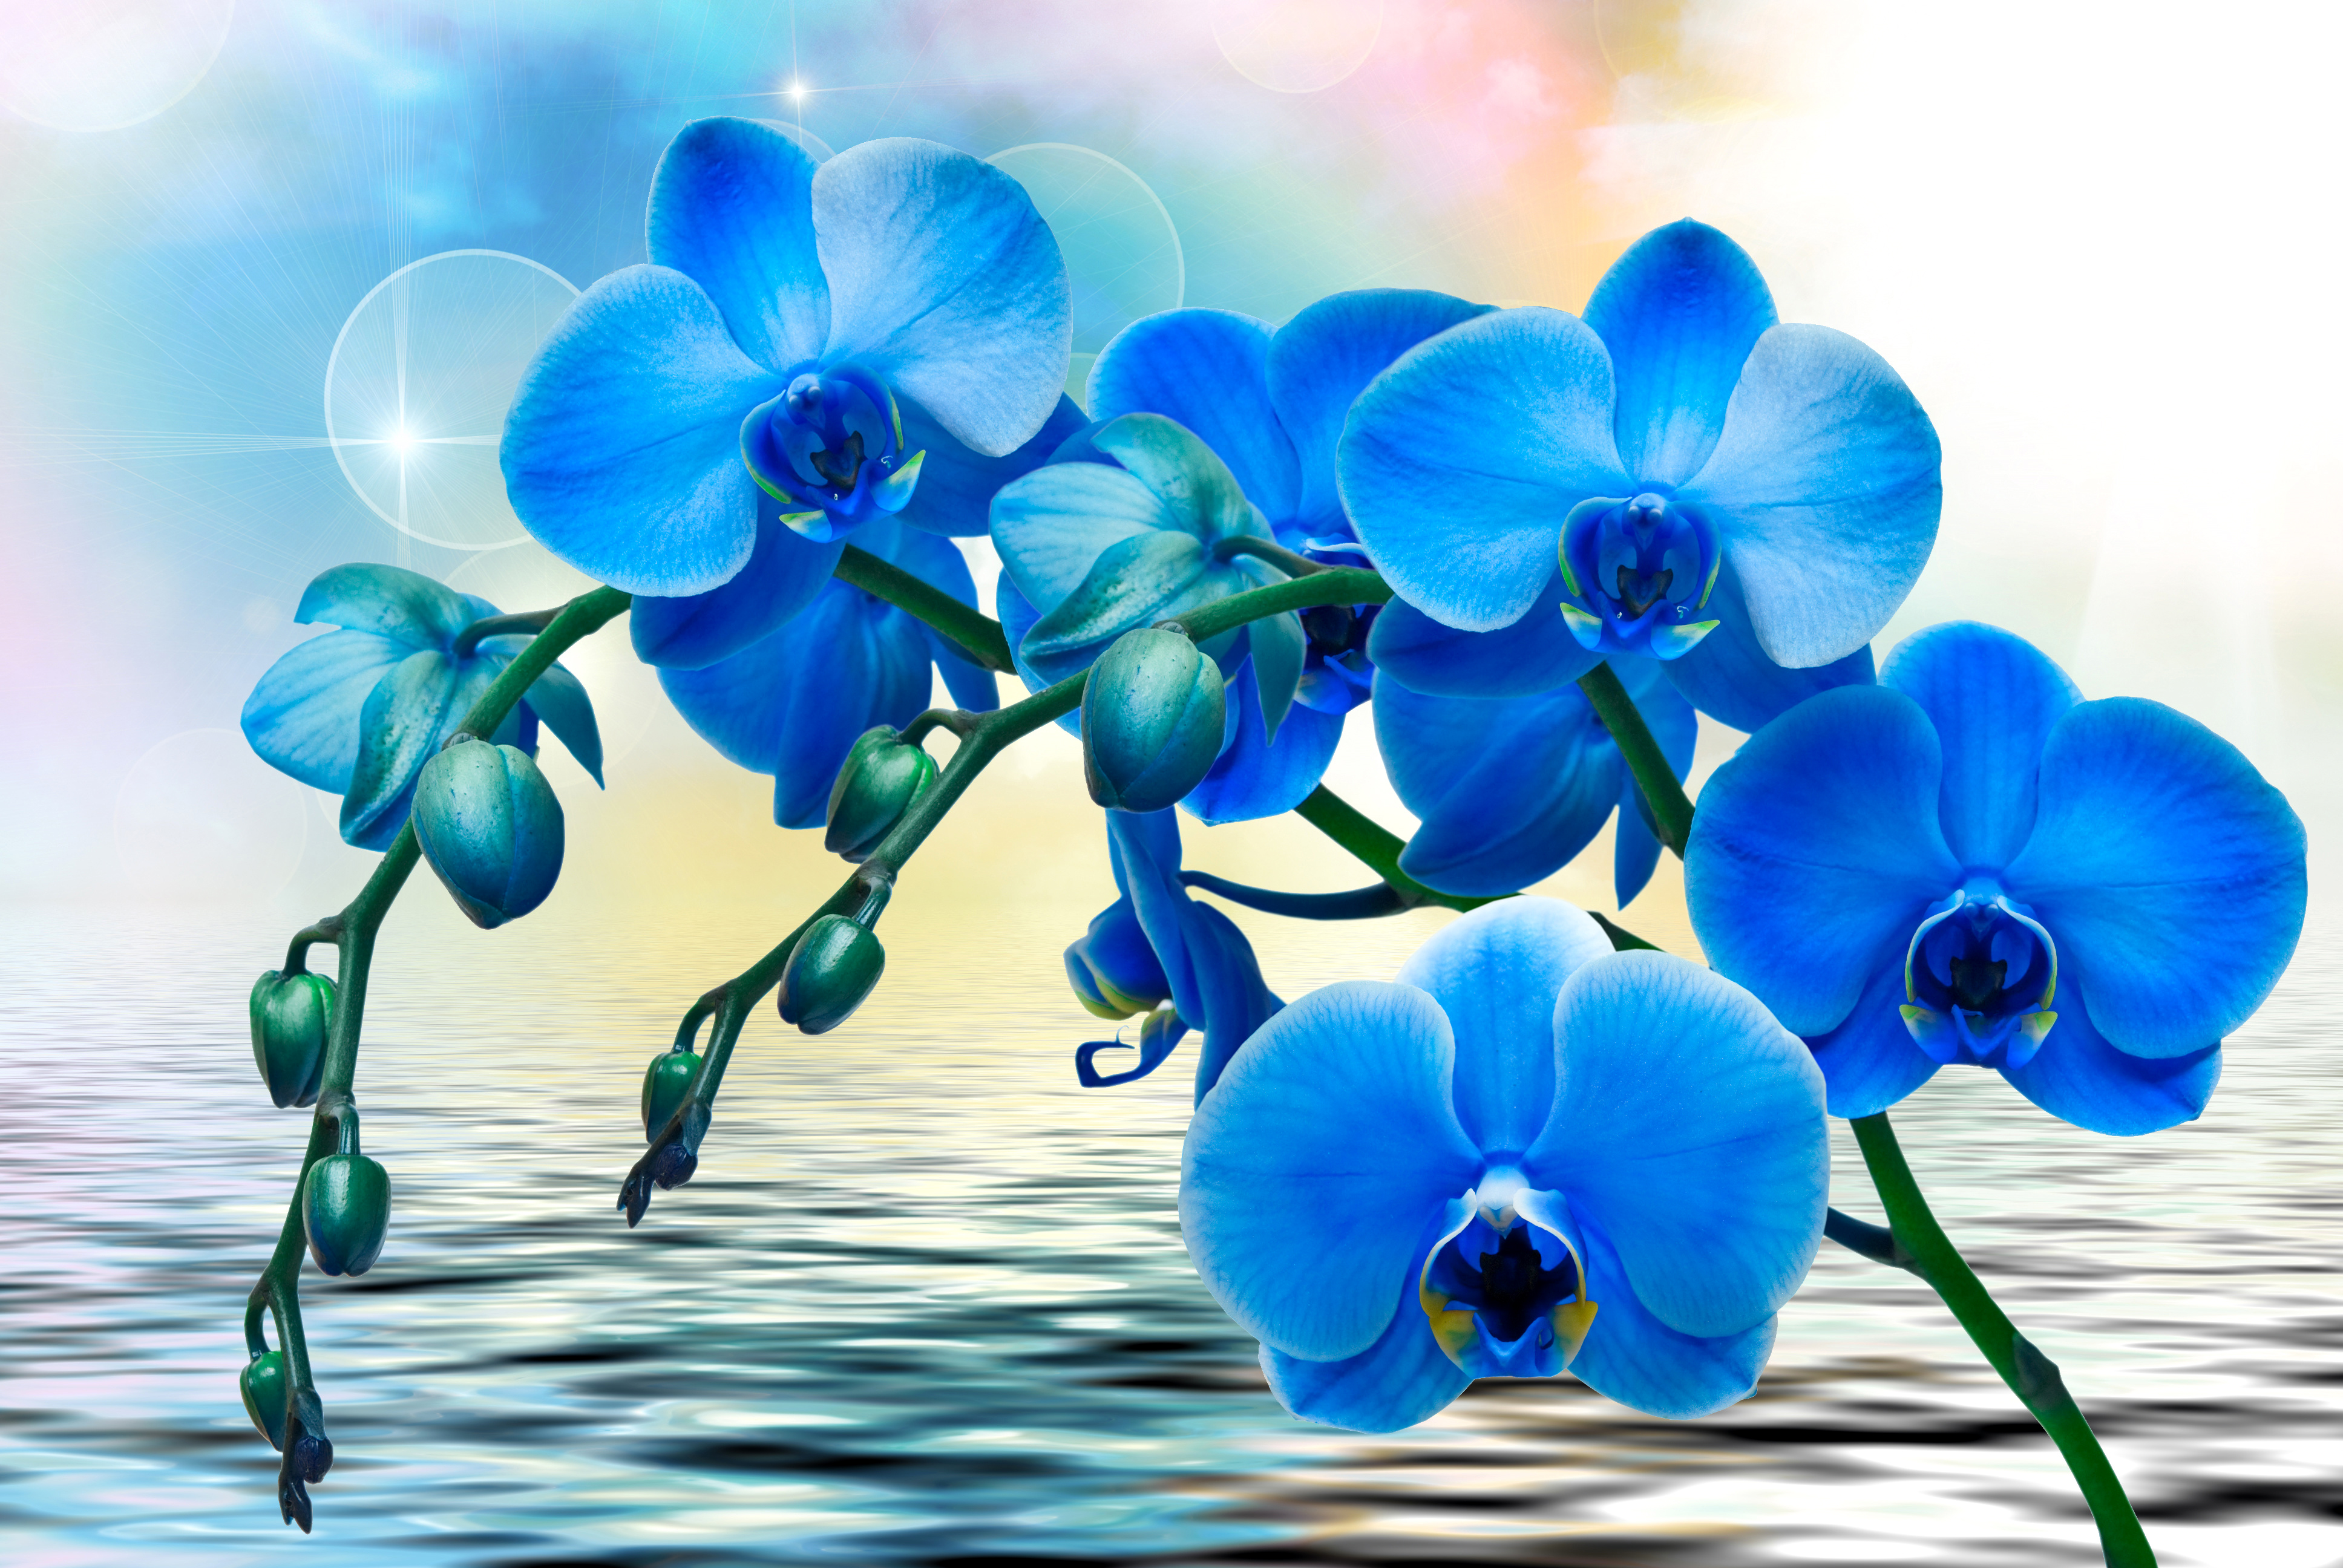 Flowers orchids. Орхидея фаленопсис синяя. Бирюзовая Орхидея фаленопсис. Орхидея фаленопсис голубая. Тайская Орхидея синяя.